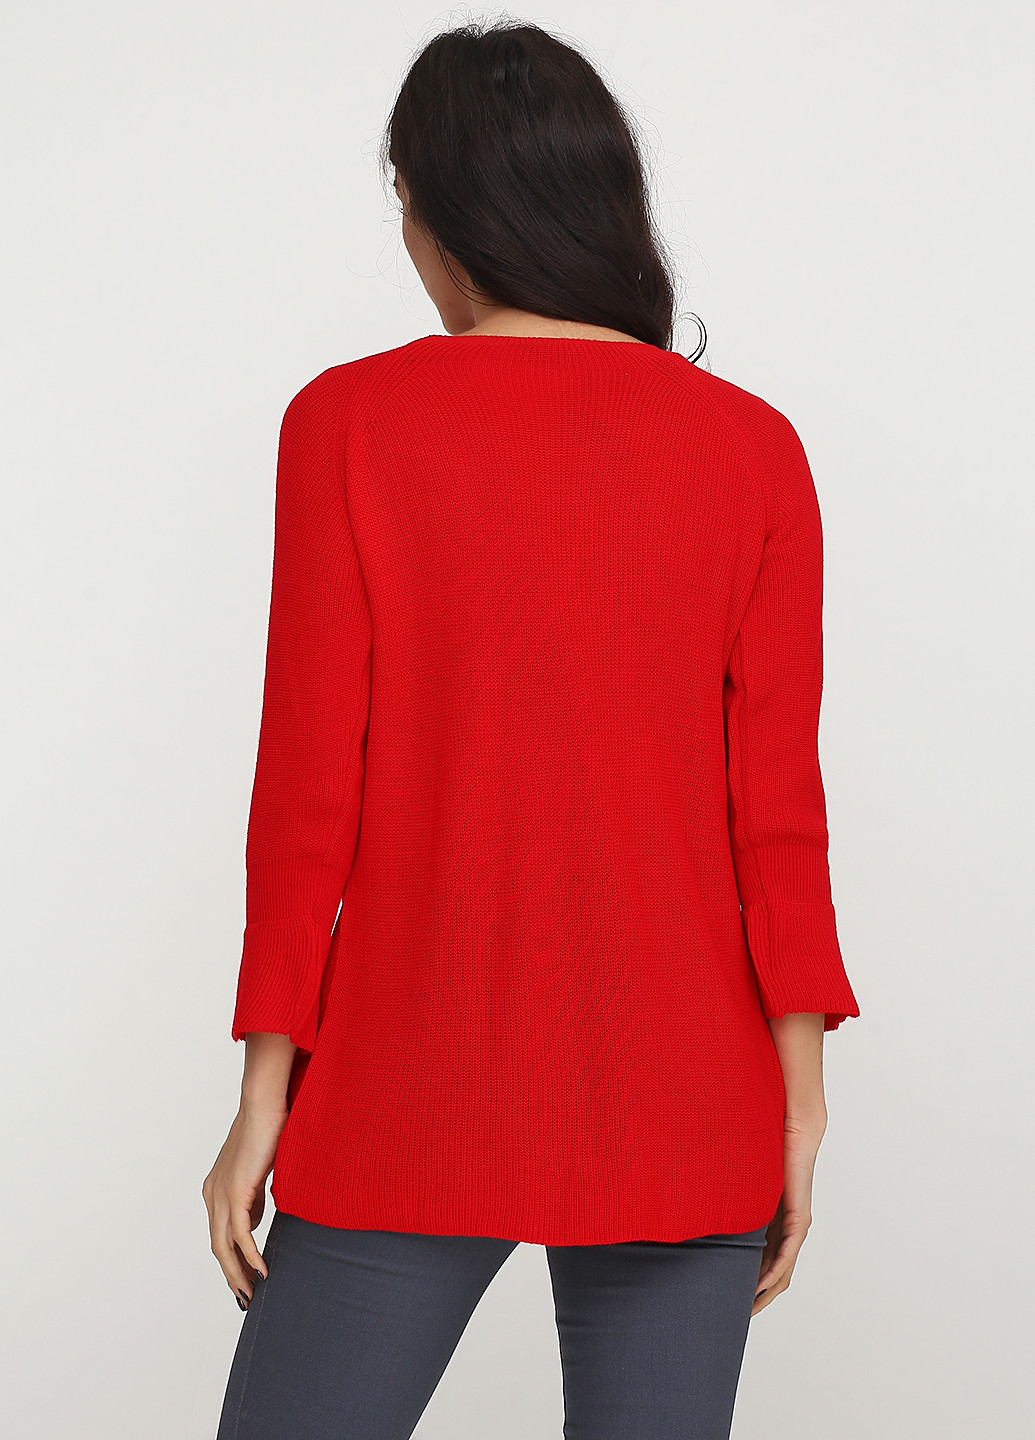 Красный демисезонный пуловер пуловер Babylon